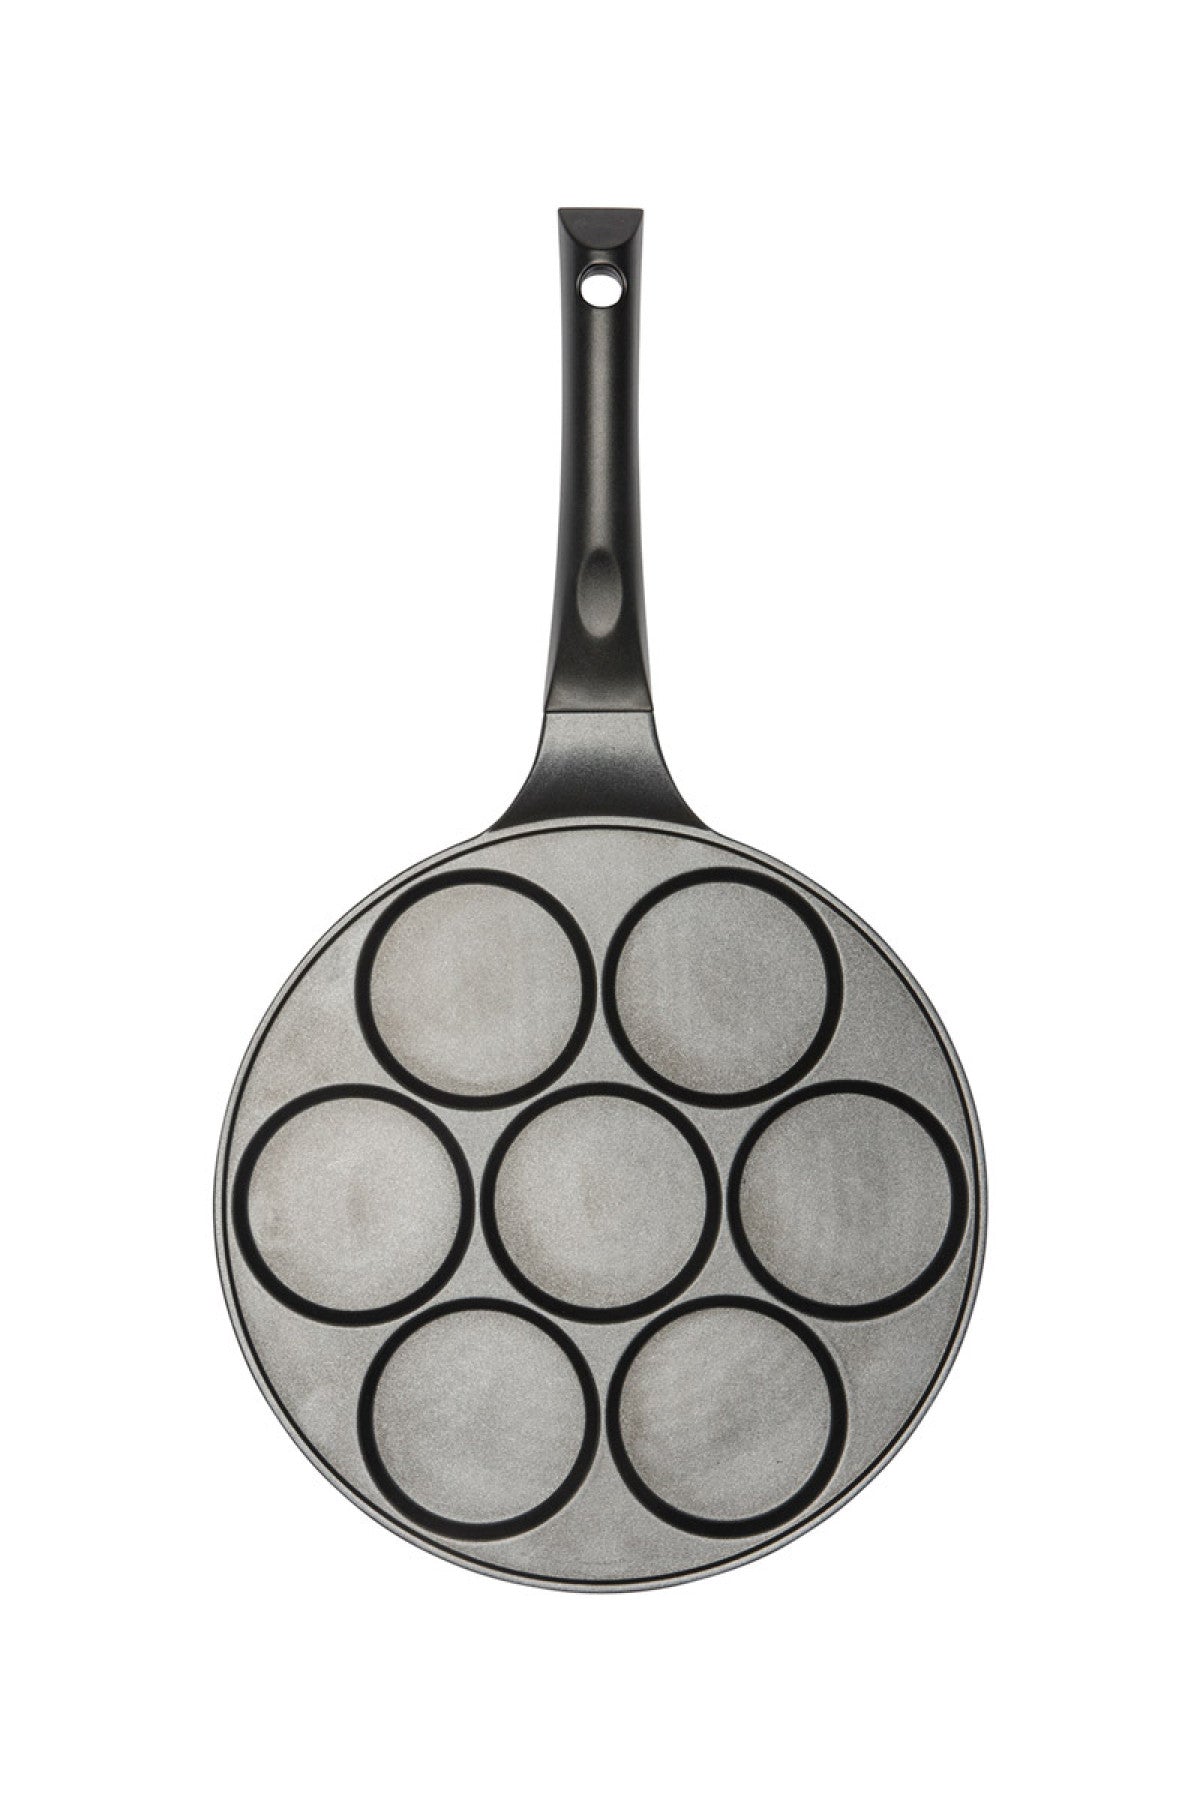 PANCAKE-/BLINI PAN WITH 7 DEEPER CUPS 27 cm cast aluminium